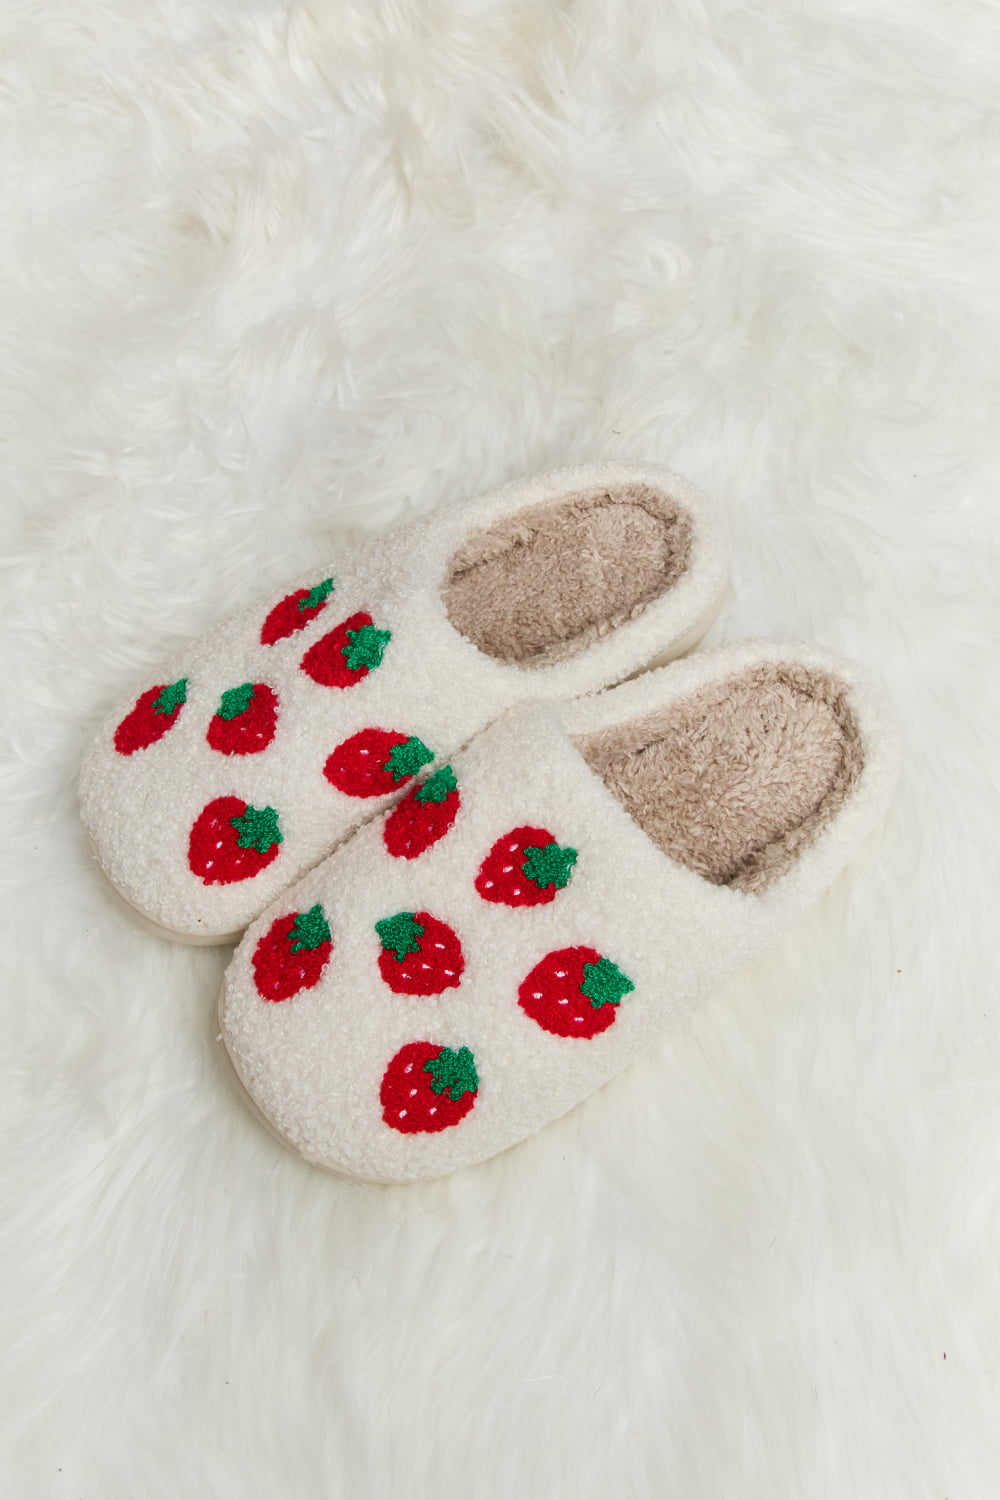 Strawberry Plush Slide Slippers